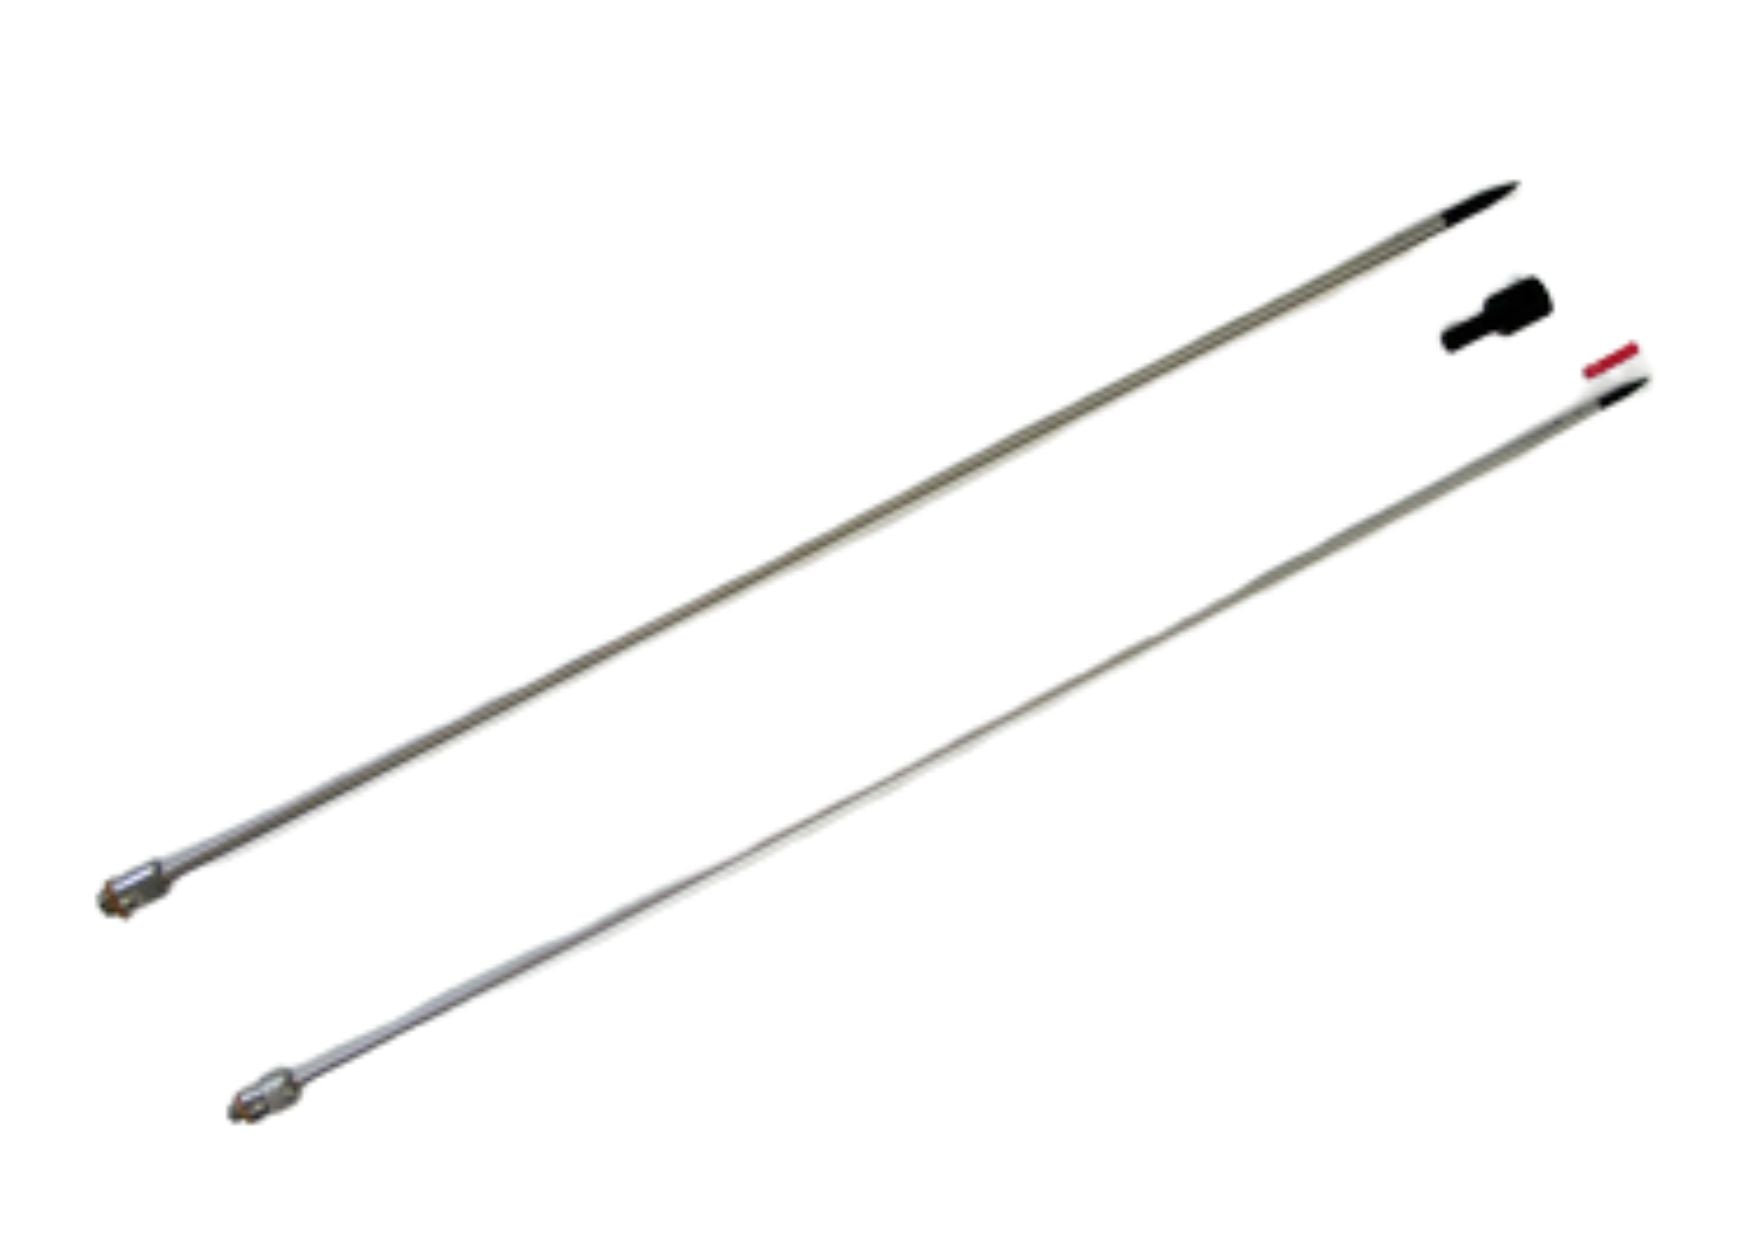 Trocar Hypo Shaft, 1/8" x 42 cm (16.5"), 12-32 thread-M, TP6325